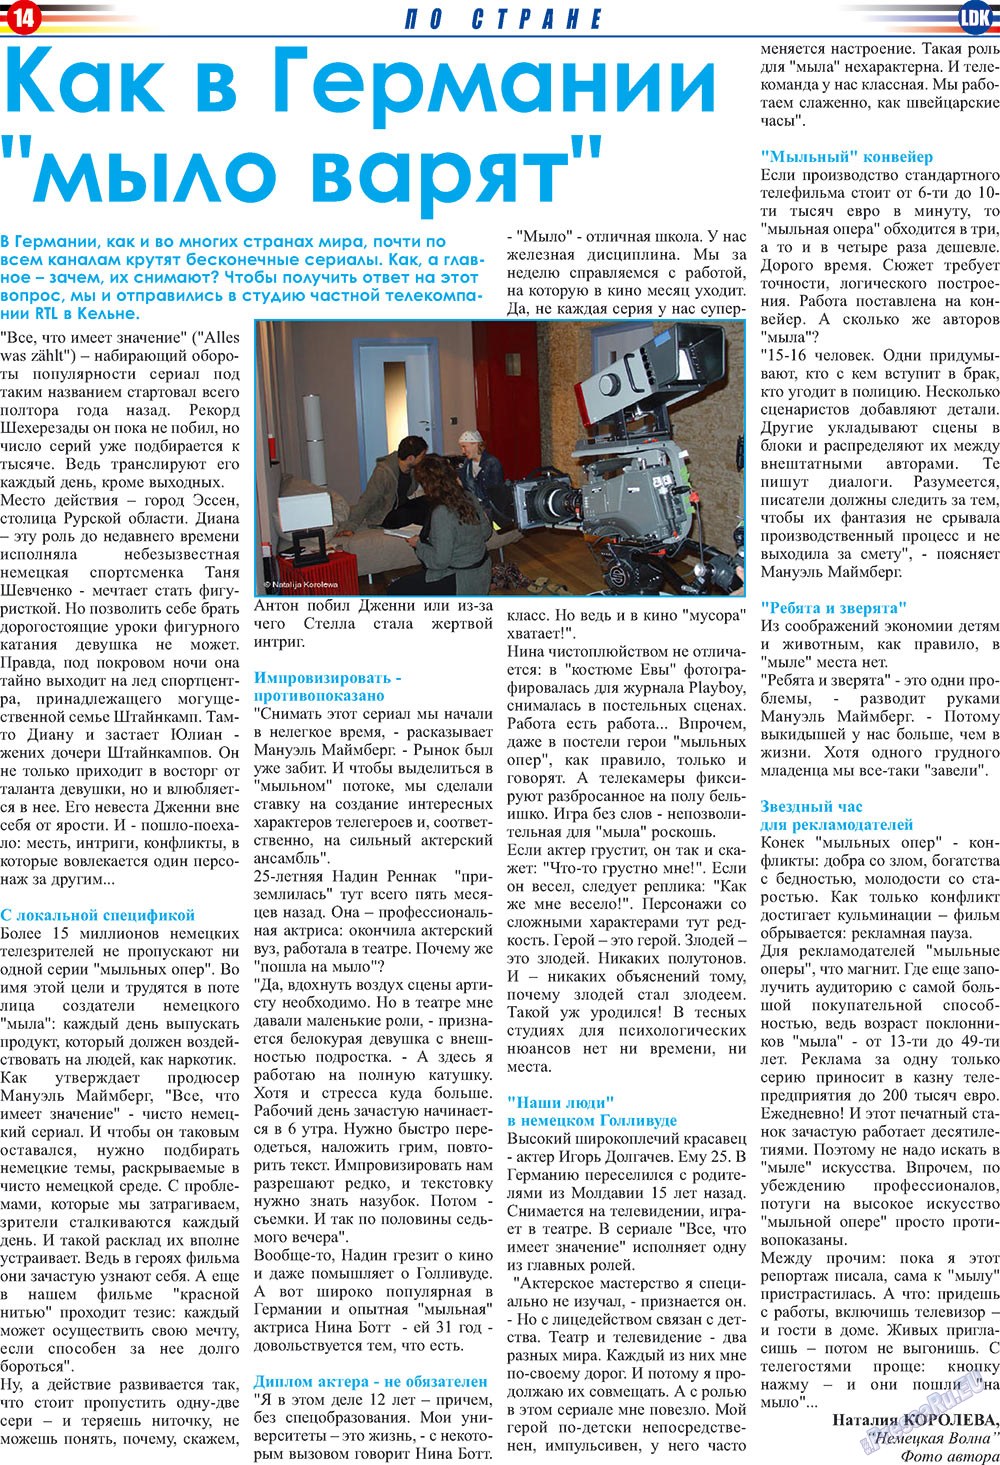 LDK по-русски (газета). 2009 год, номер 6, стр. 14